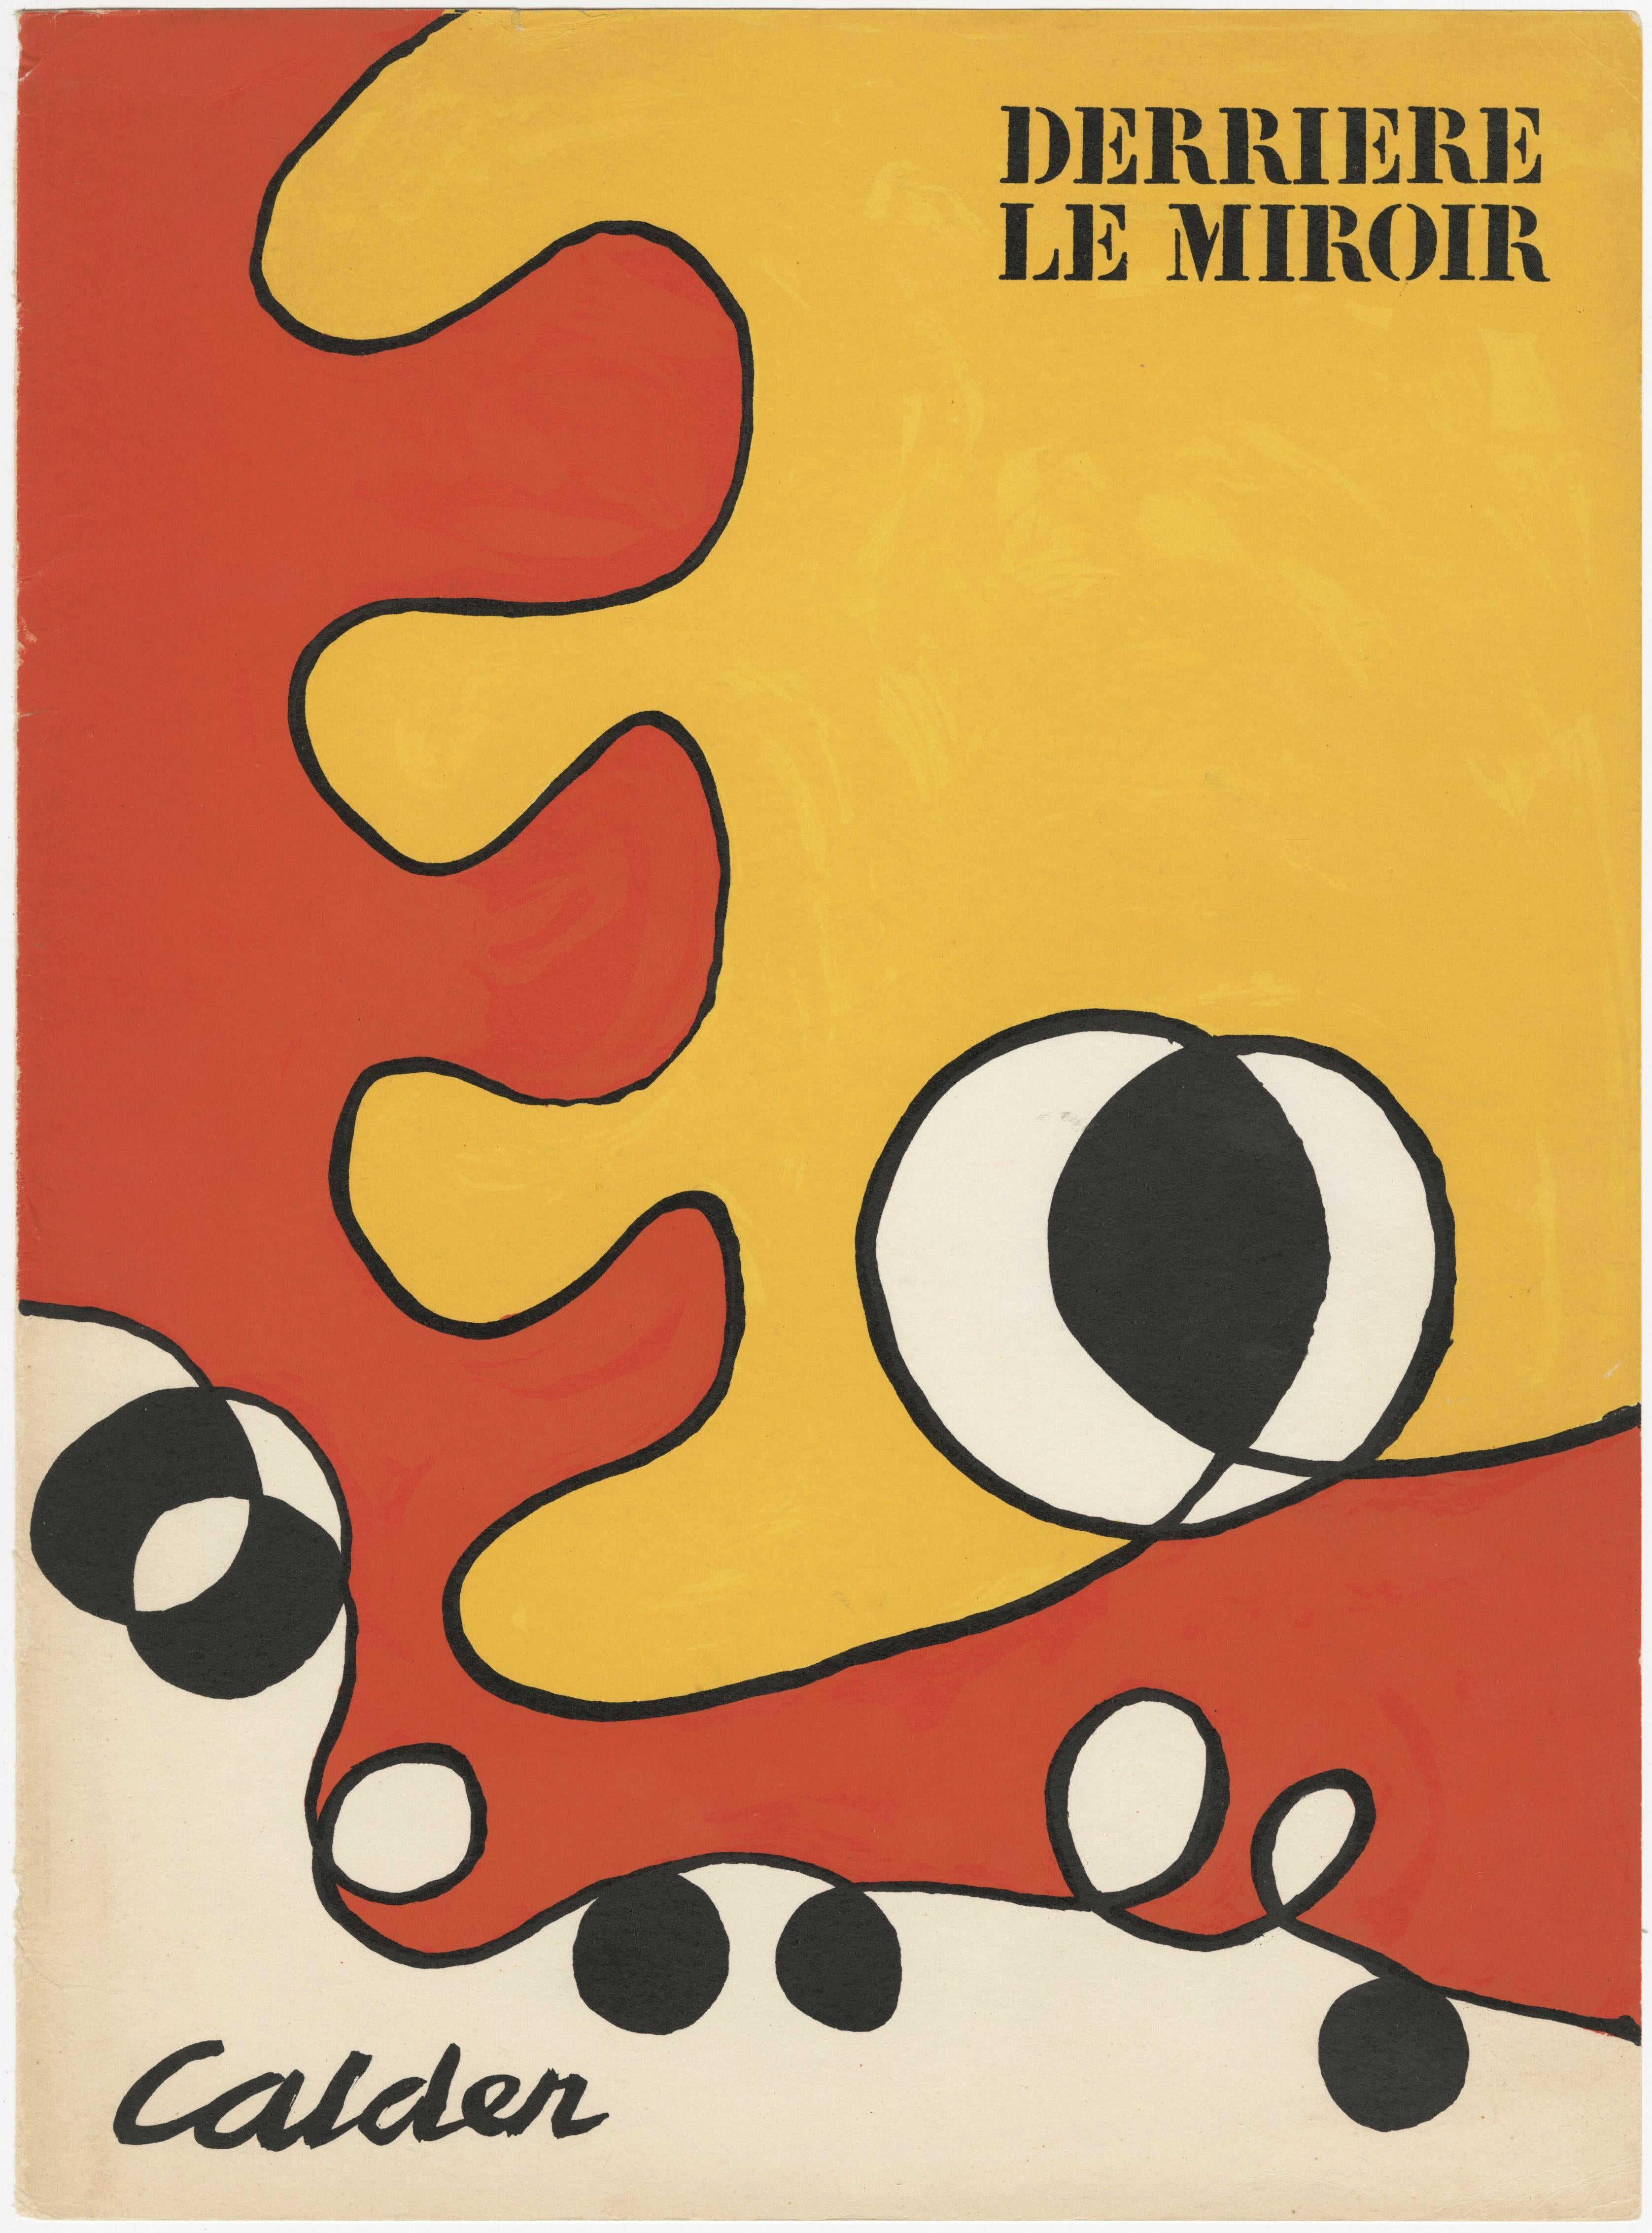 Abstract Print Alexander Calder - Couverture pour DLM No. 173